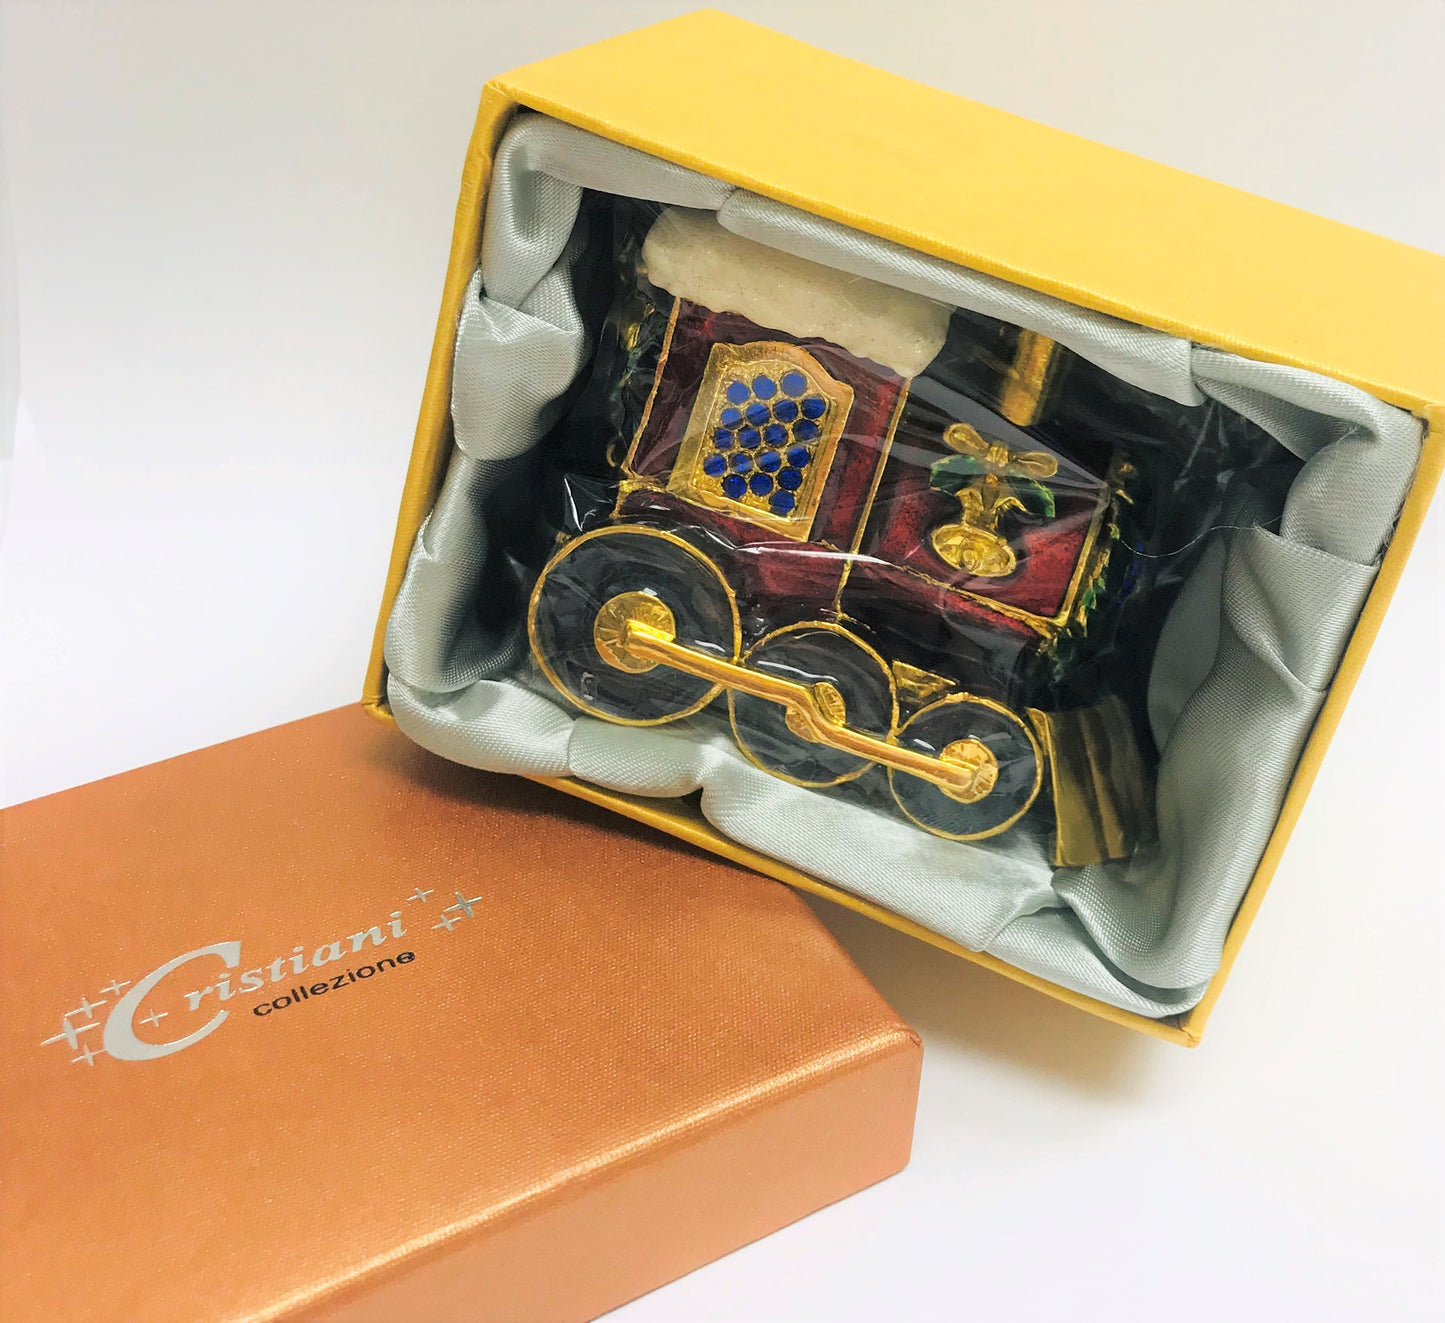 Cristiani Collezione Christmas Train Trinket Box.